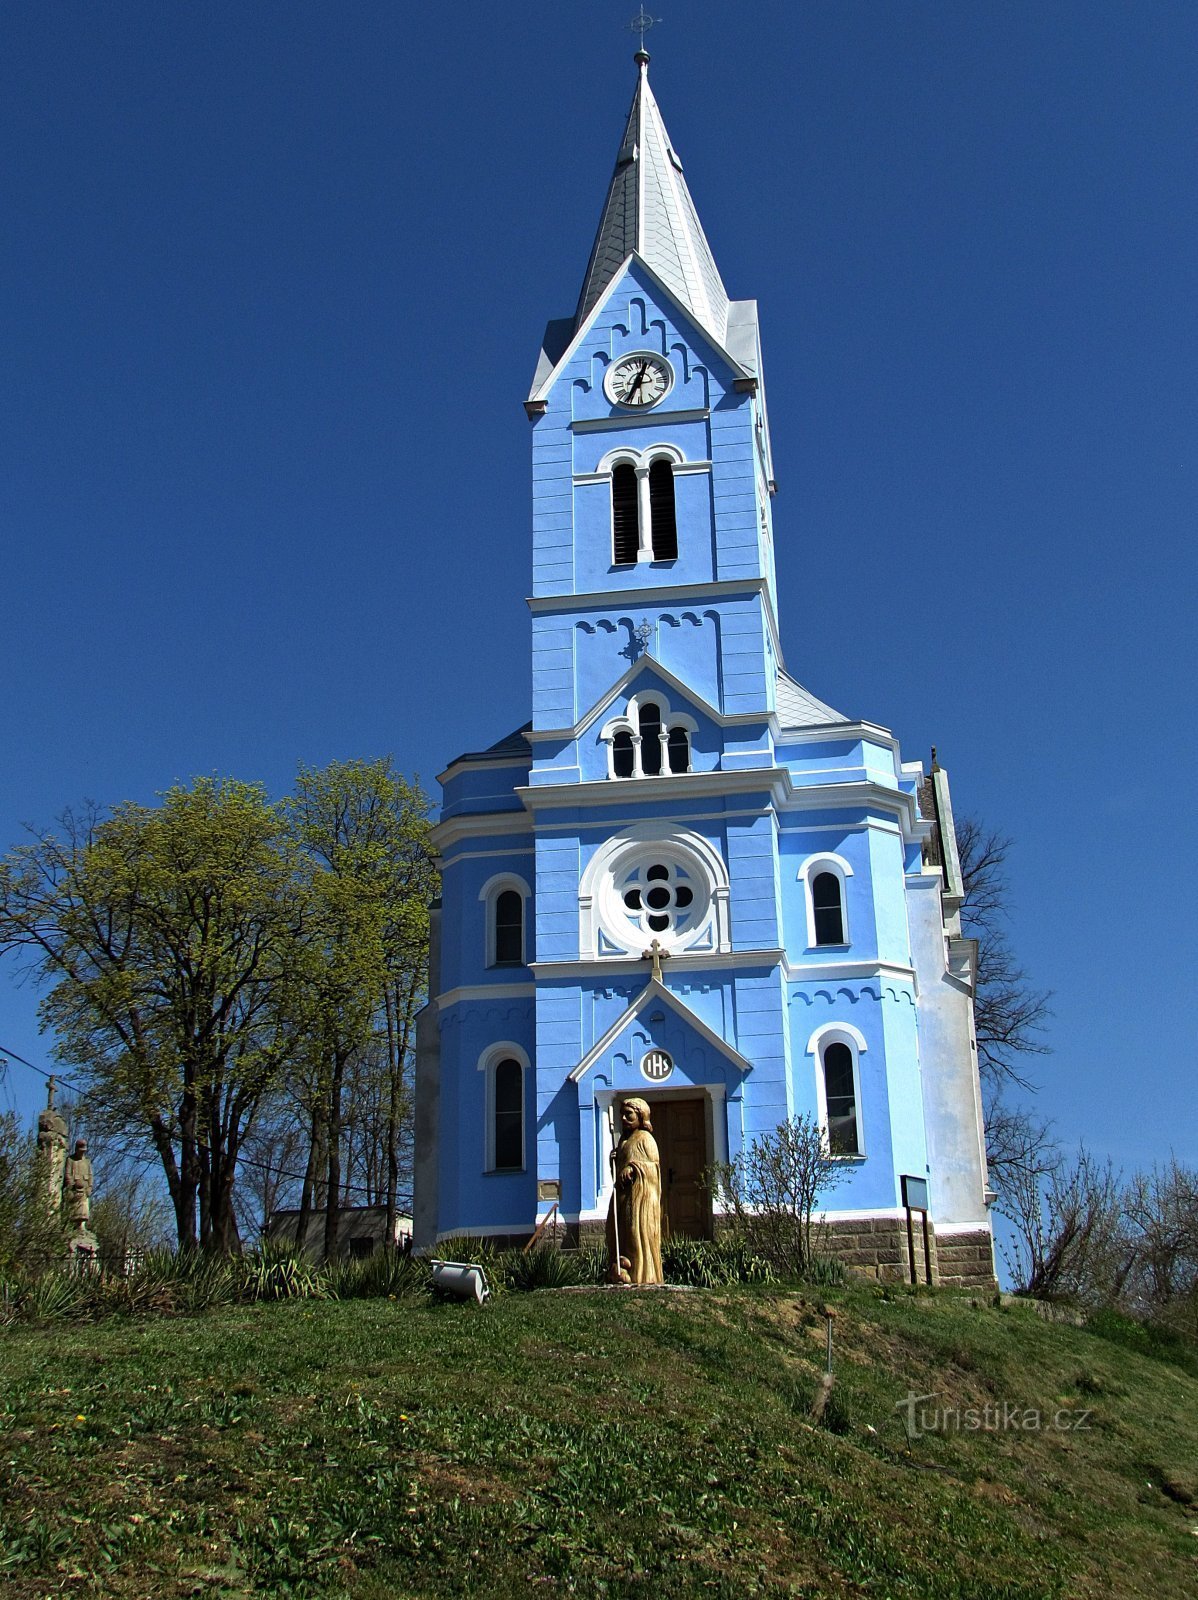 Stříbrnice - площа церкви Св. Прокопа